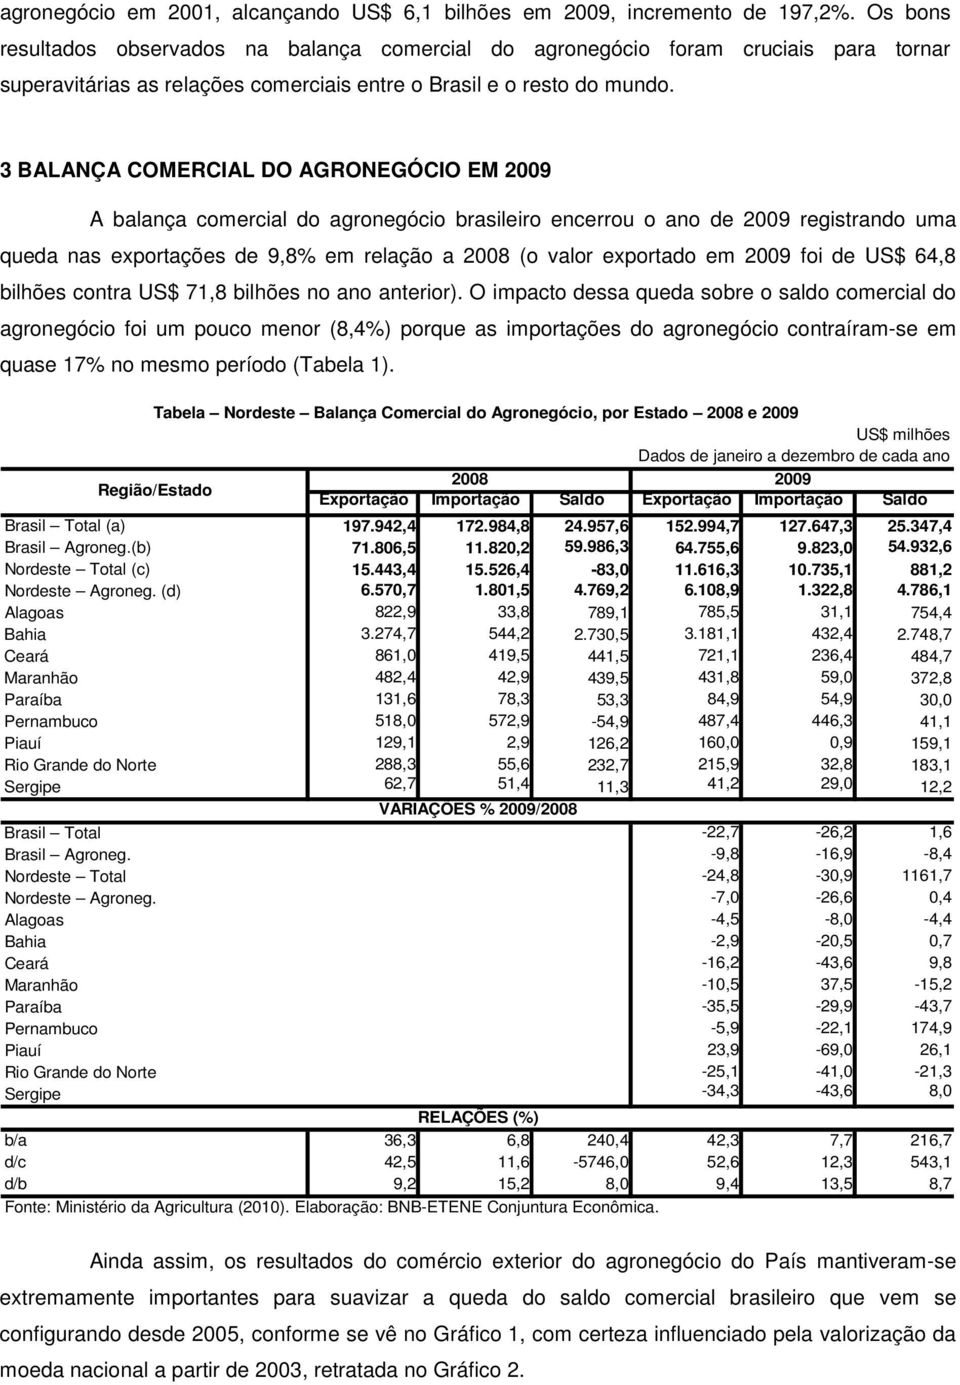 3 BALANÇA COMERCIAL DO AGRONEGÓCIO EM 2009 A balança comercial do agronegócio brasileiro encerrou o ano de 2009 registrando uma queda nas exportações de 9,8% em relação a 2008 (o valor exportado em